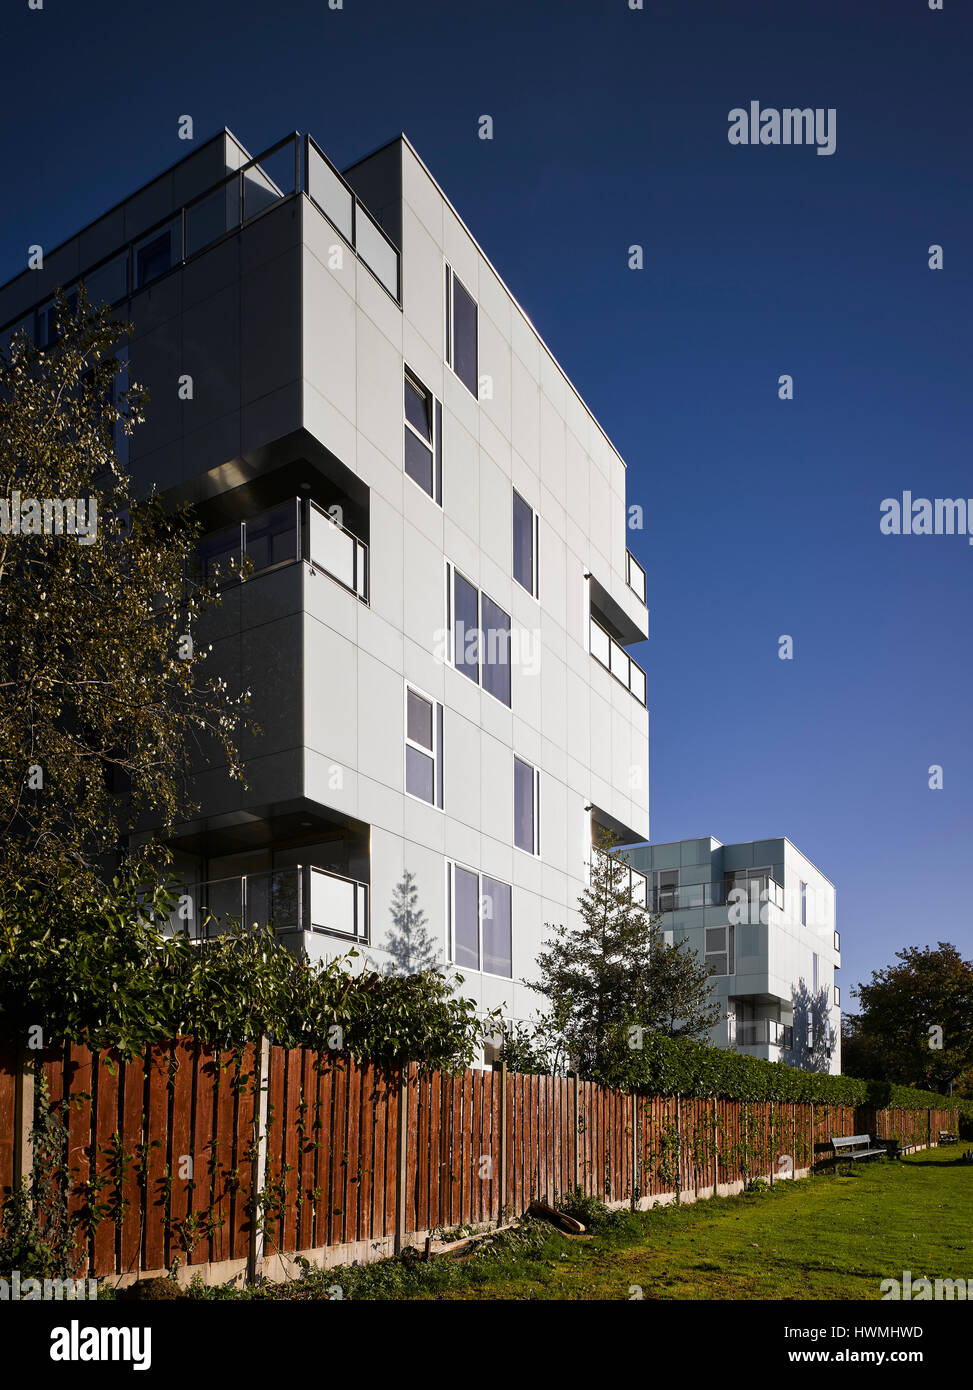 Blick zurück Außenfassade zeigt Gründe. Dunluce Apartments, Ballsbridge, Irland. Architekt: Derek Tynan Architekten, 2016. Stockfoto